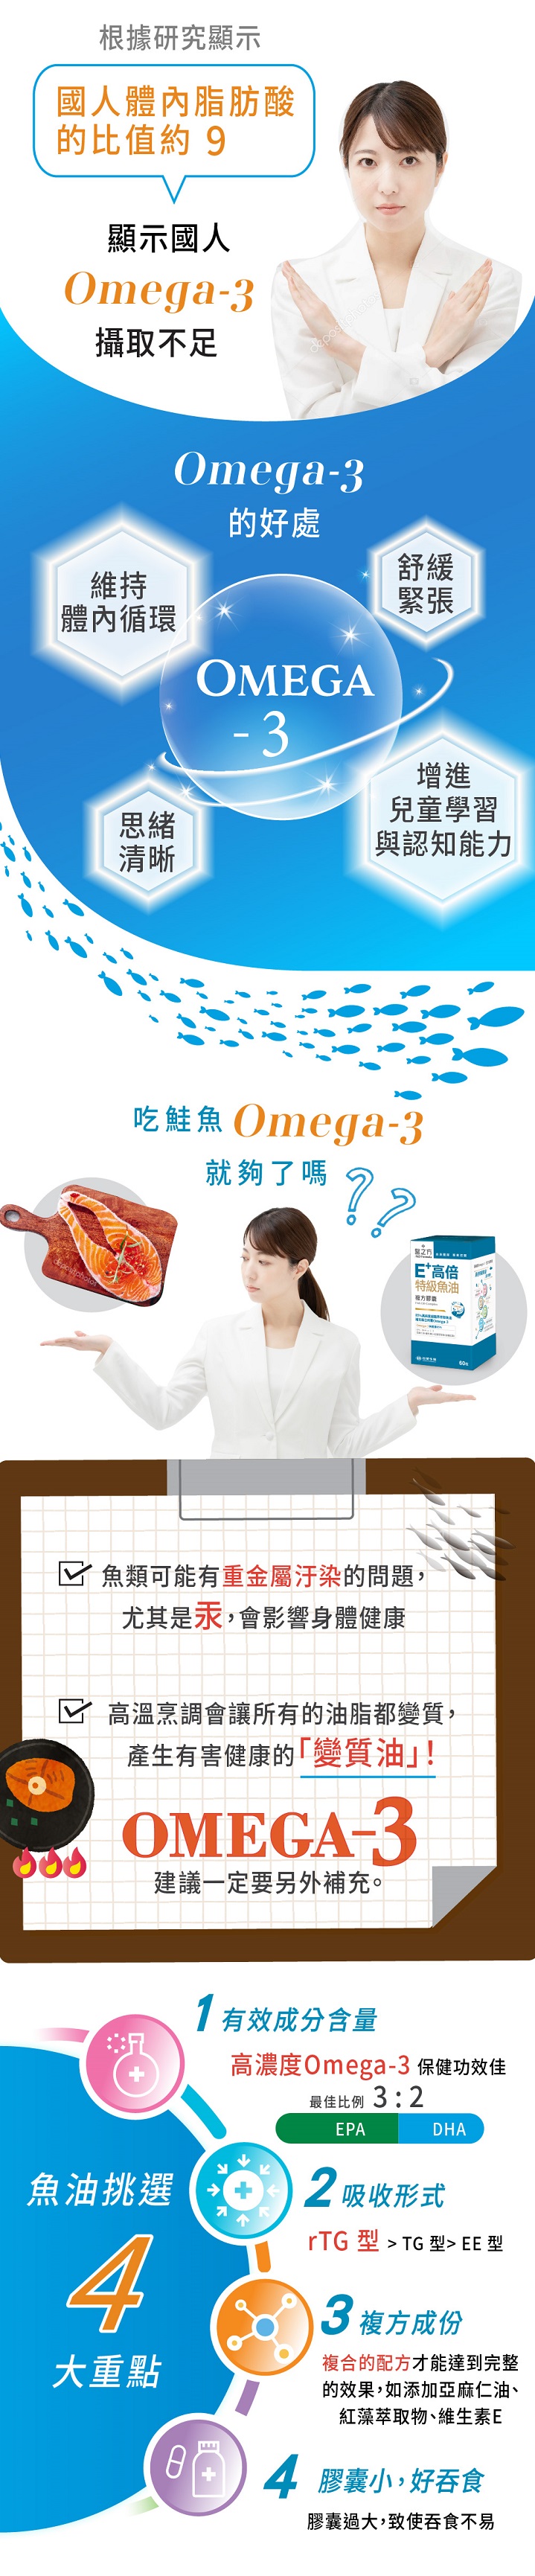 根據研究顯示人體內脂肪酸比例 (Omega-6/Omega-3)的比值最好是小於3